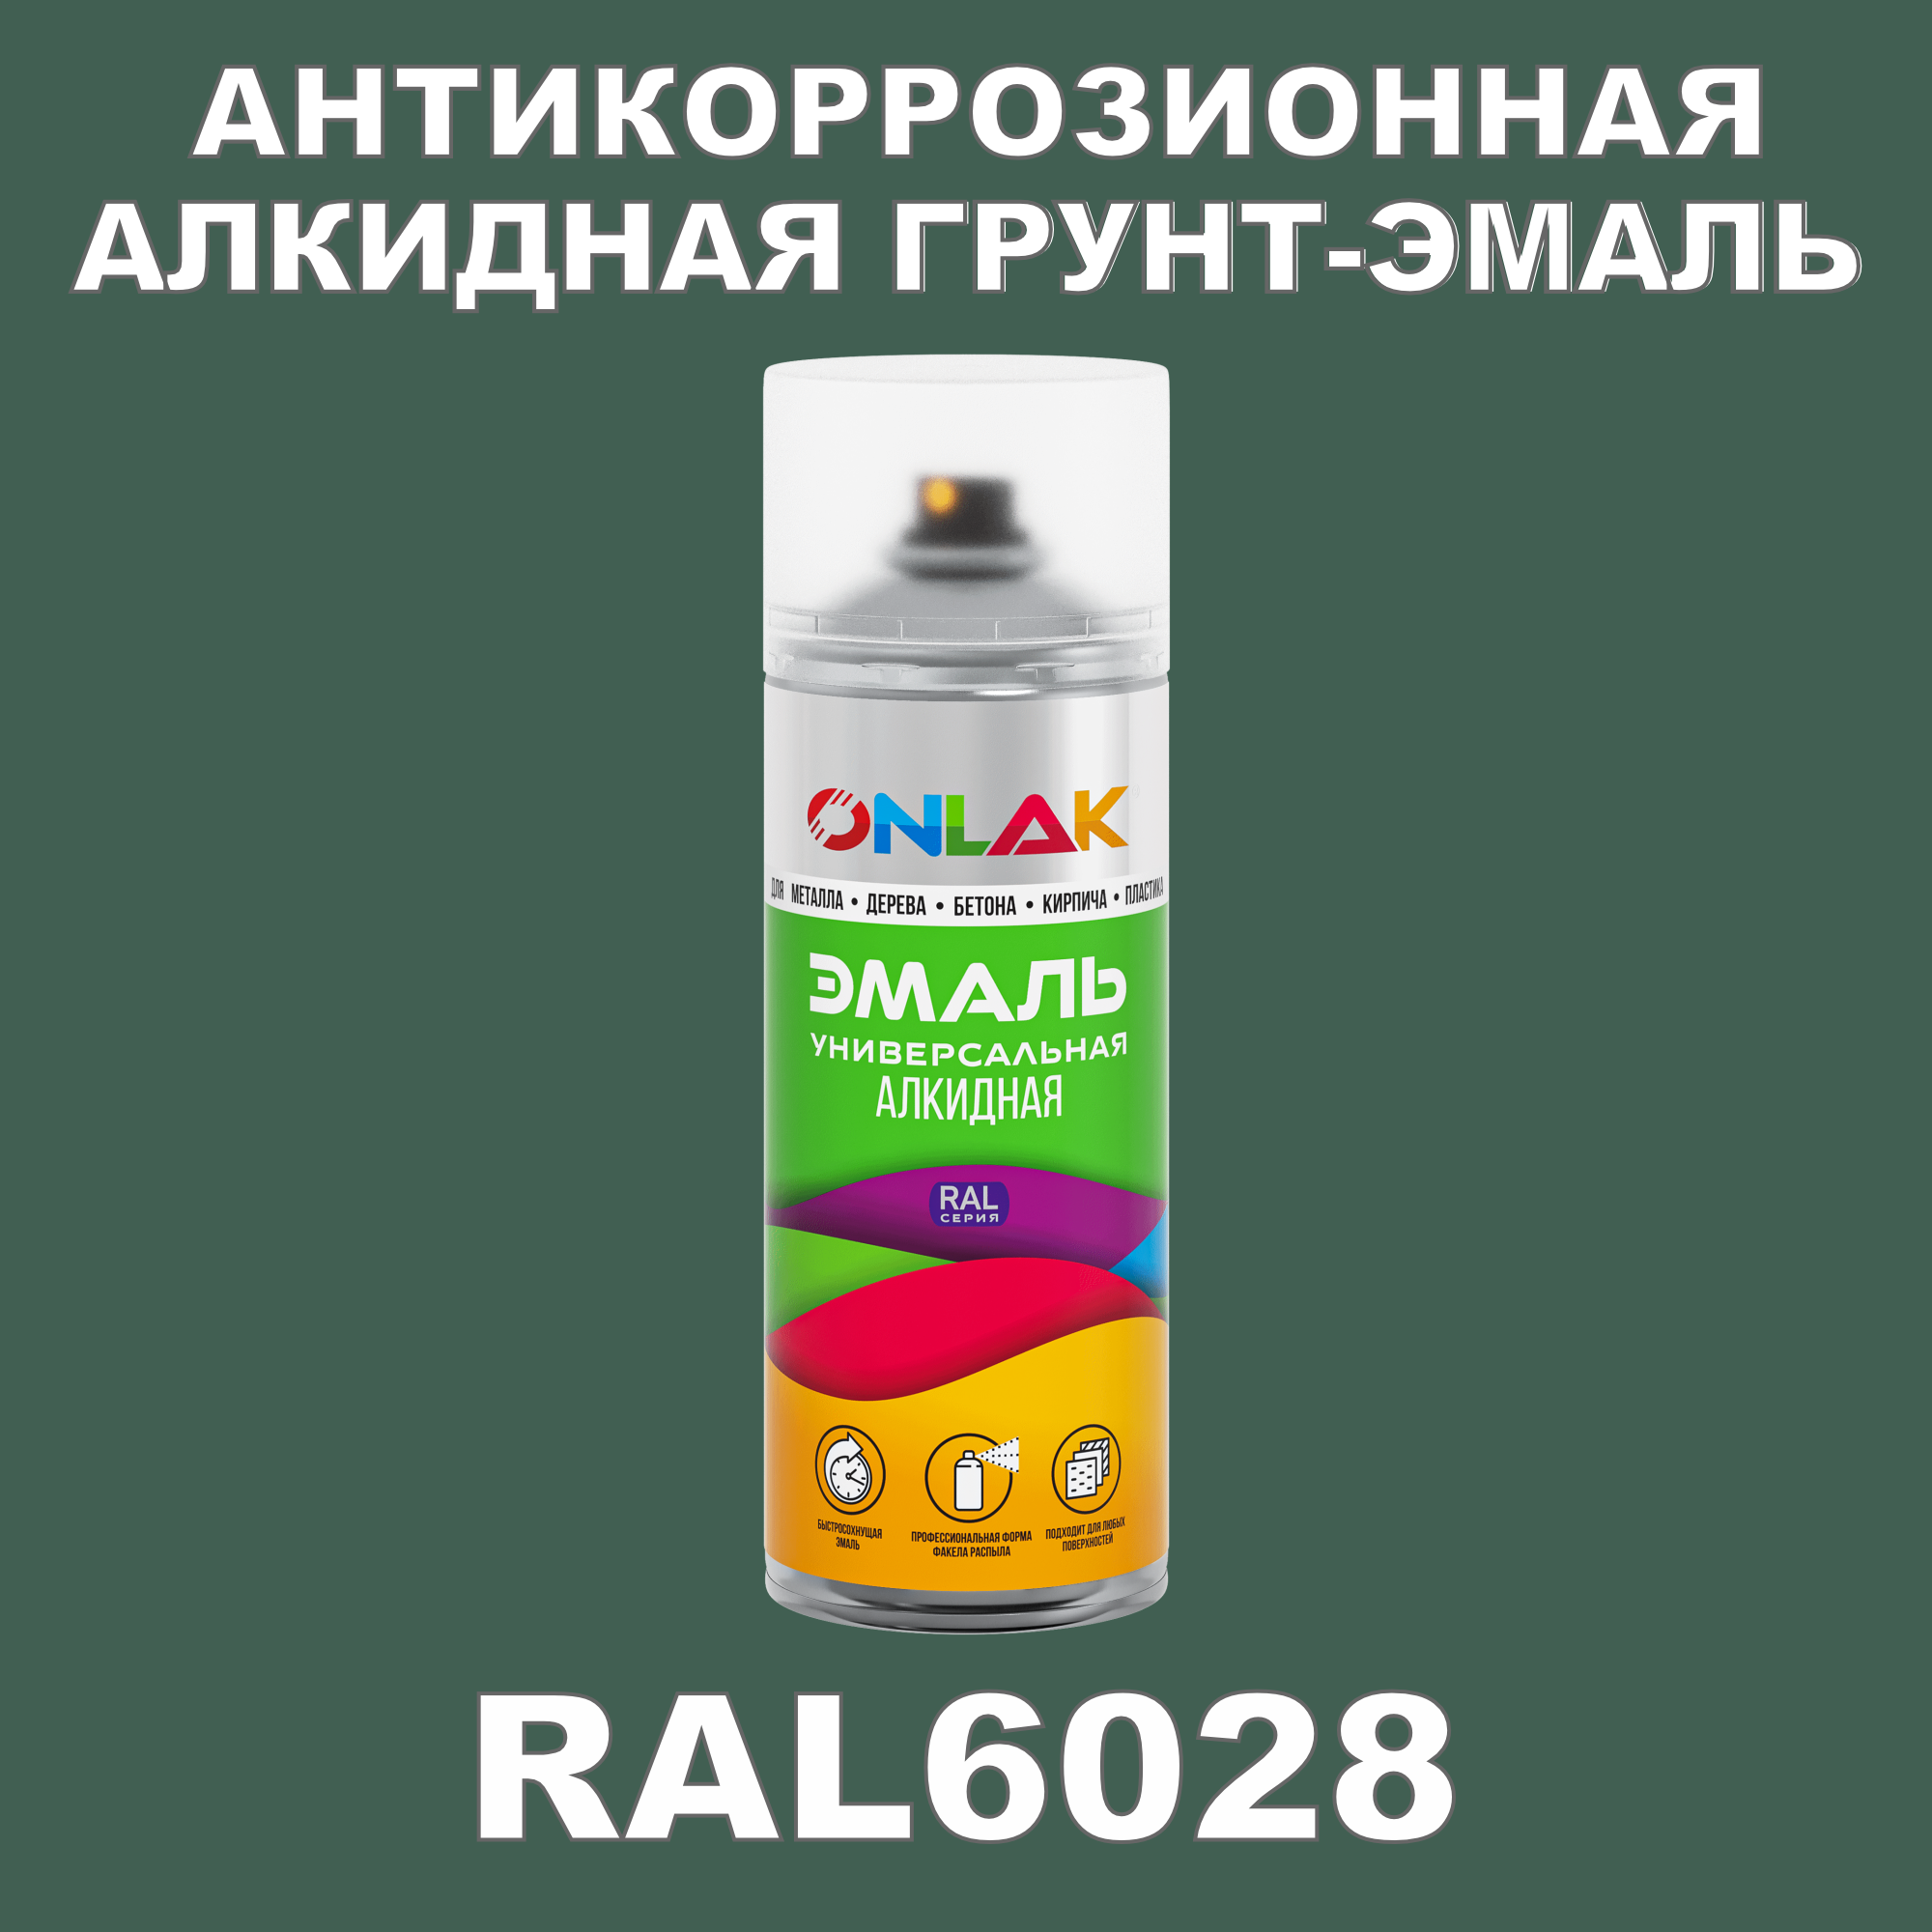 Антикоррозионная грунт-эмаль ONLAK RAL6028 полуматовая для металла и защиты от ржавчины